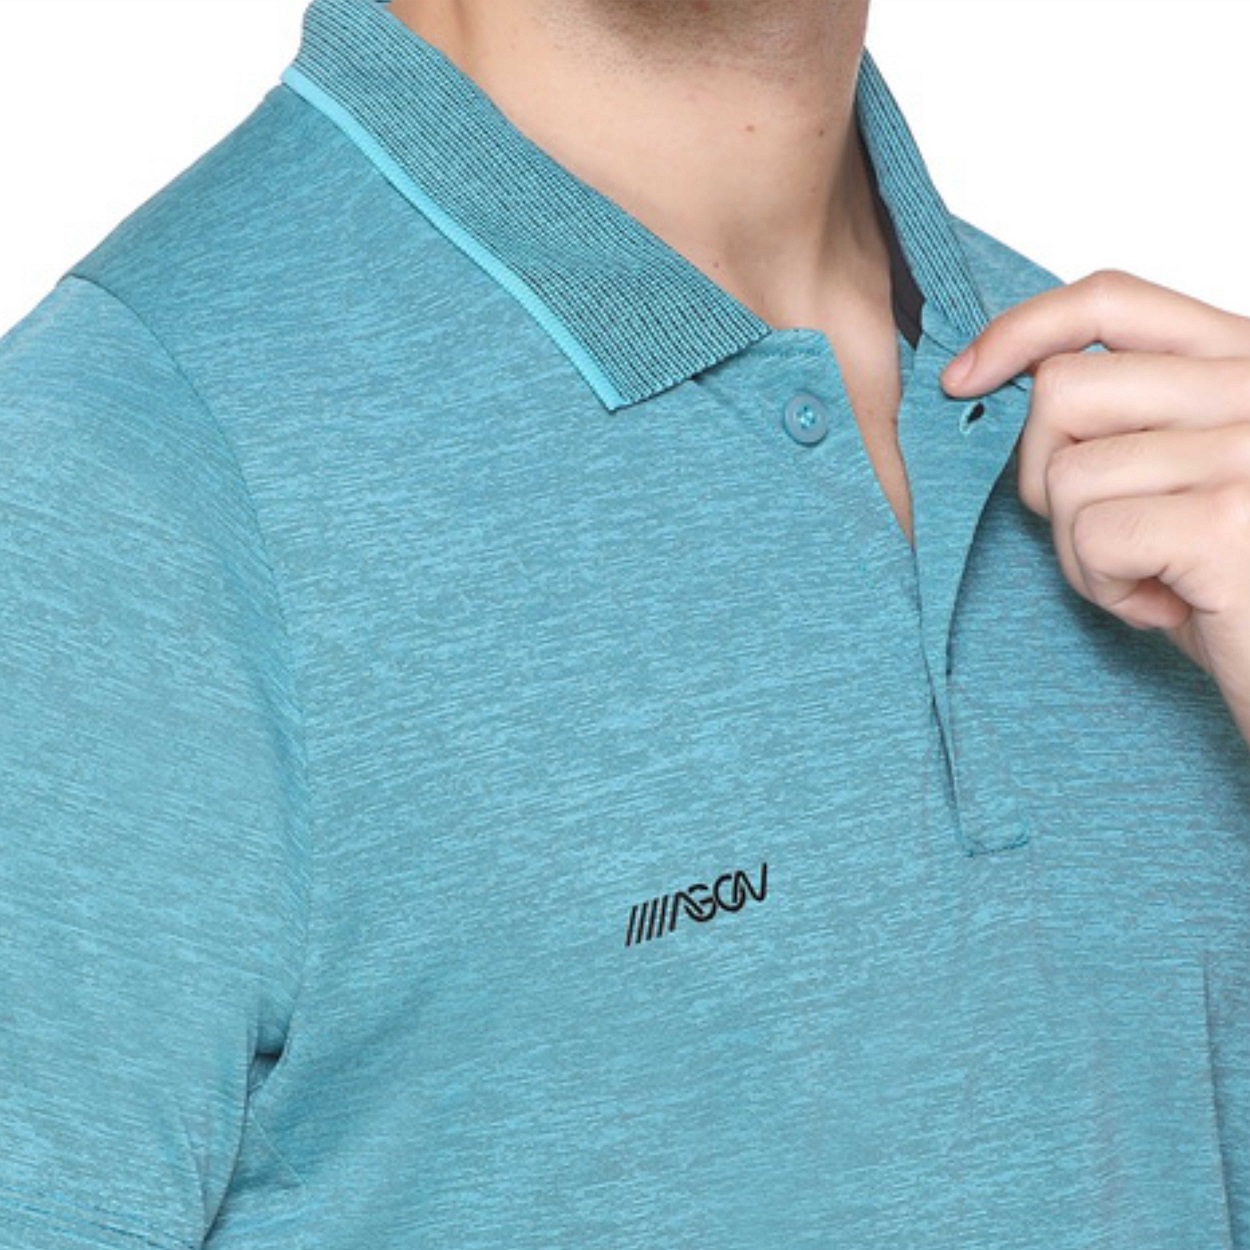 Proact Men's Polo T Shirt